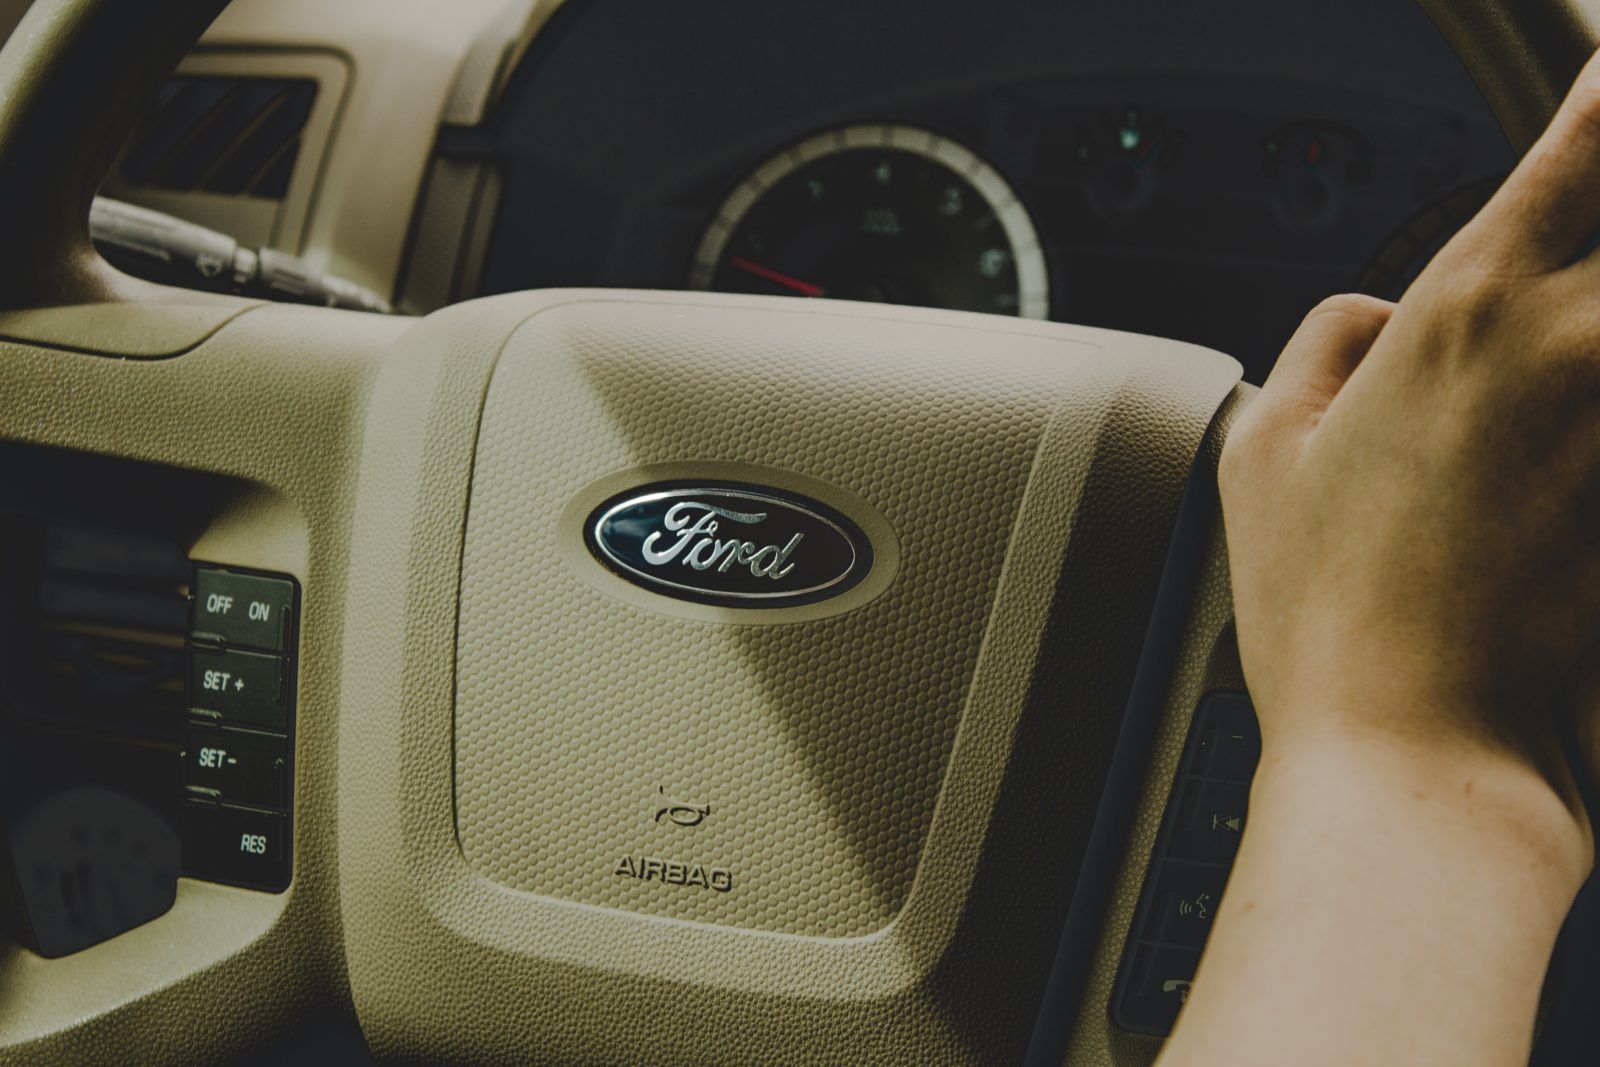 Operativní leasing Ford – jaké nabízí podmínky a modely vozů?